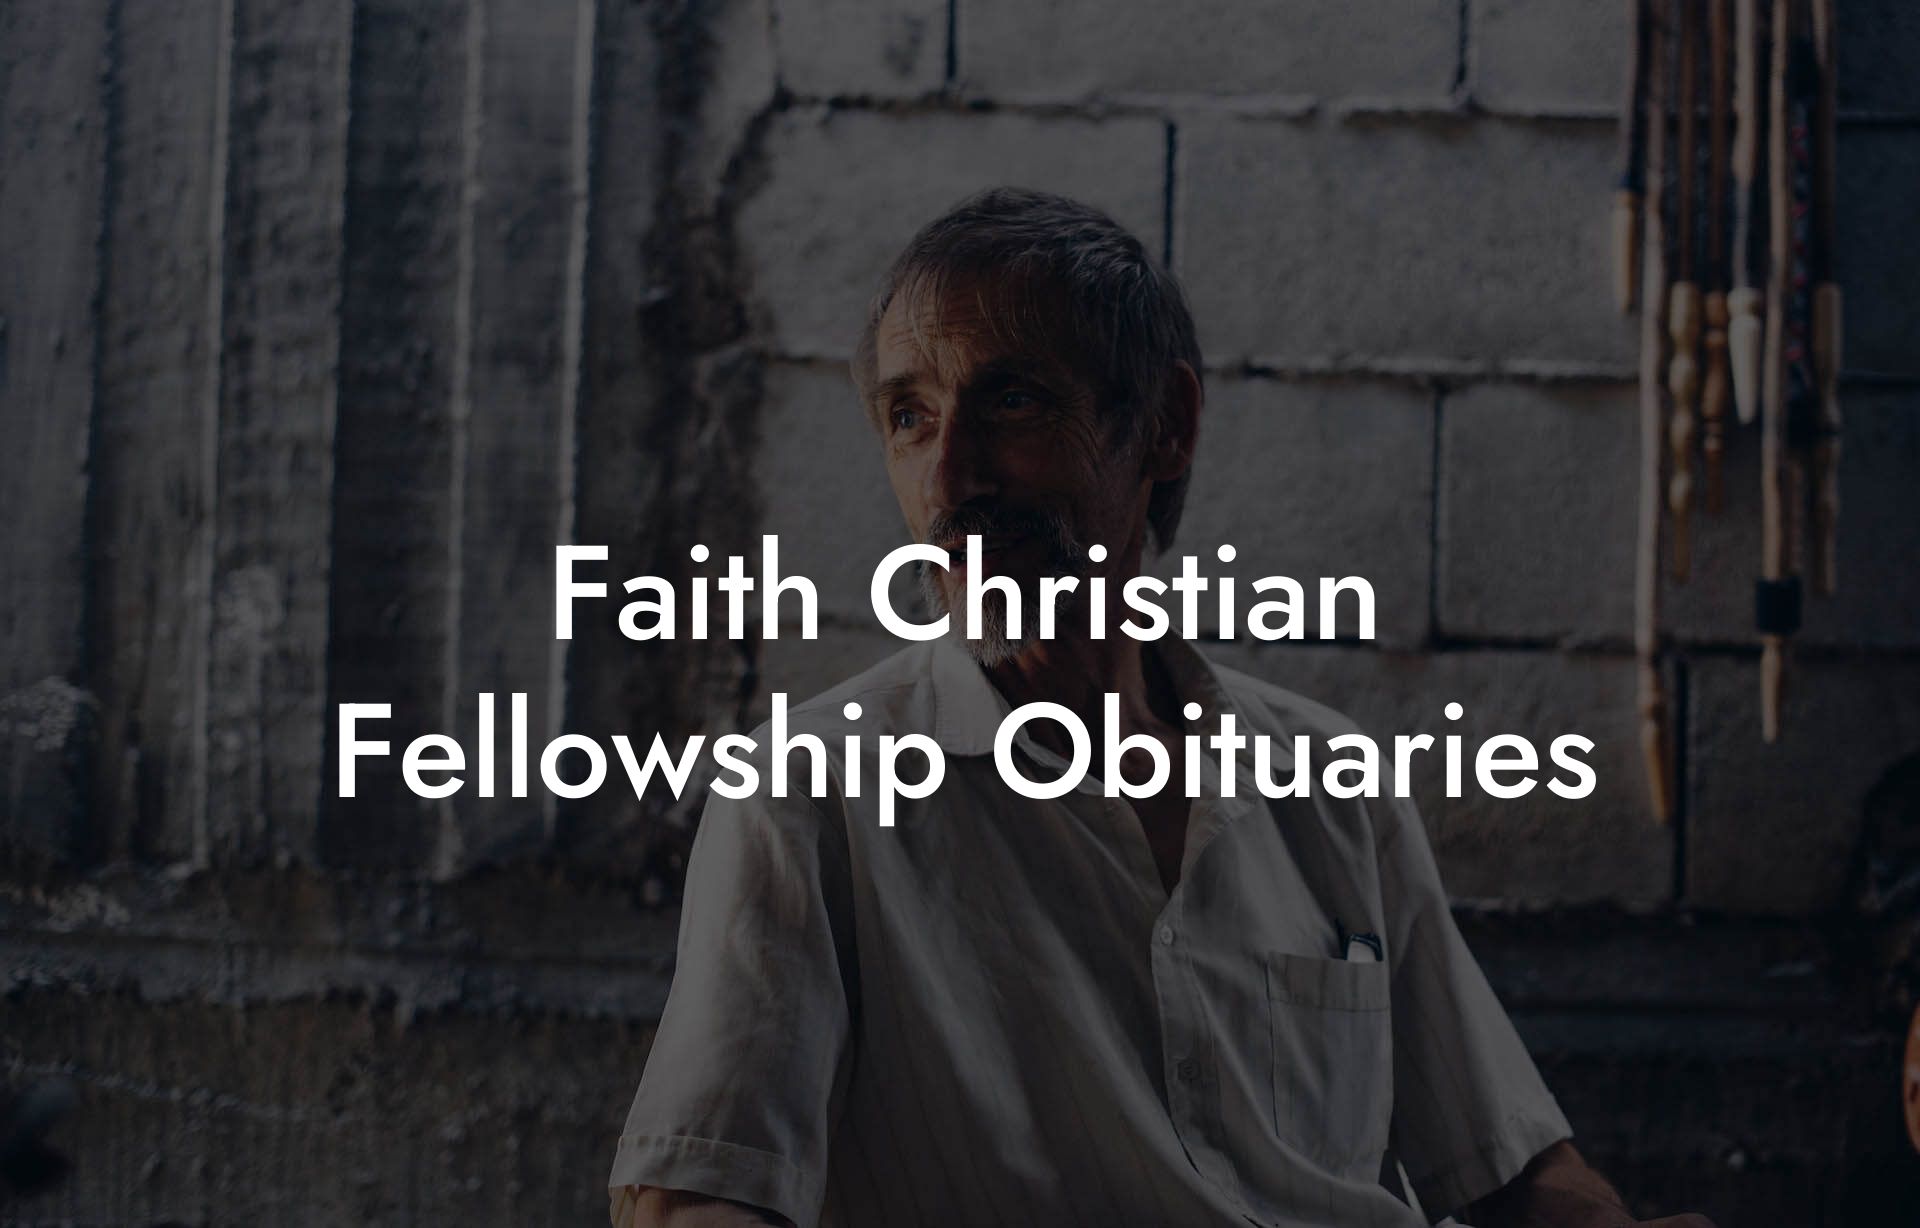 Faith Christian Fellowship Obituaries